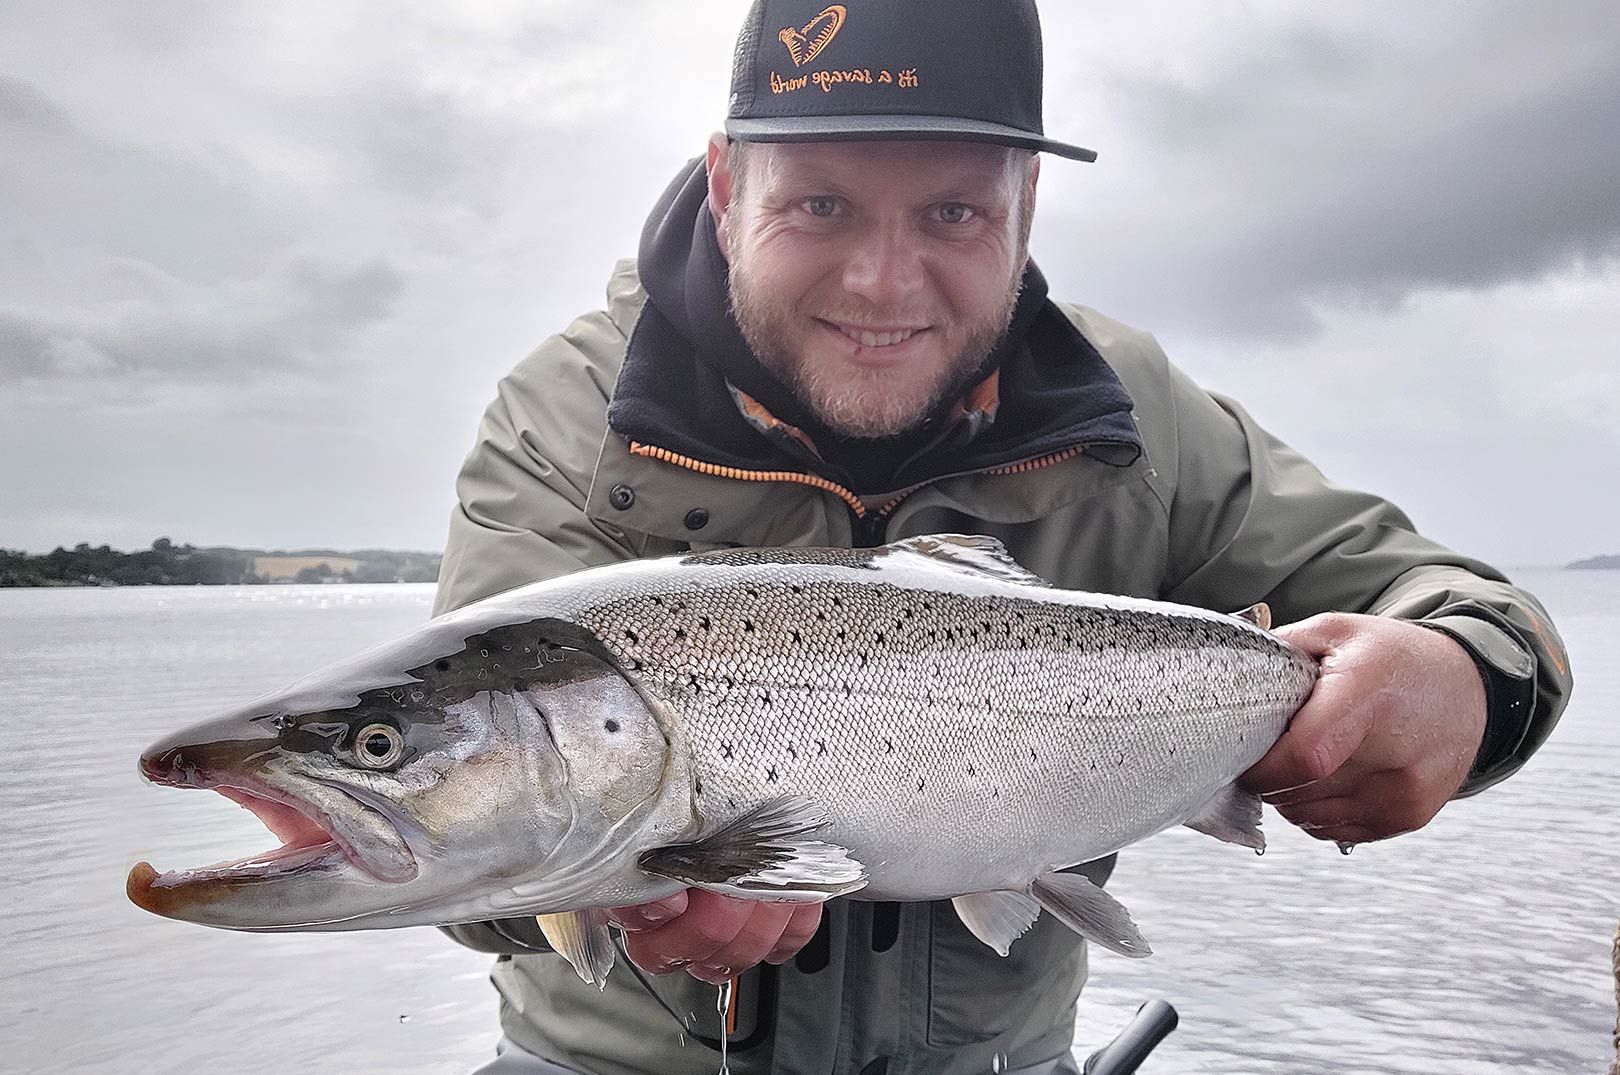 Mads med en af sine flotte blankfisk fras Kolding Fjord. Øverst Mads Davisen med sin flotte nye PR-havørred.